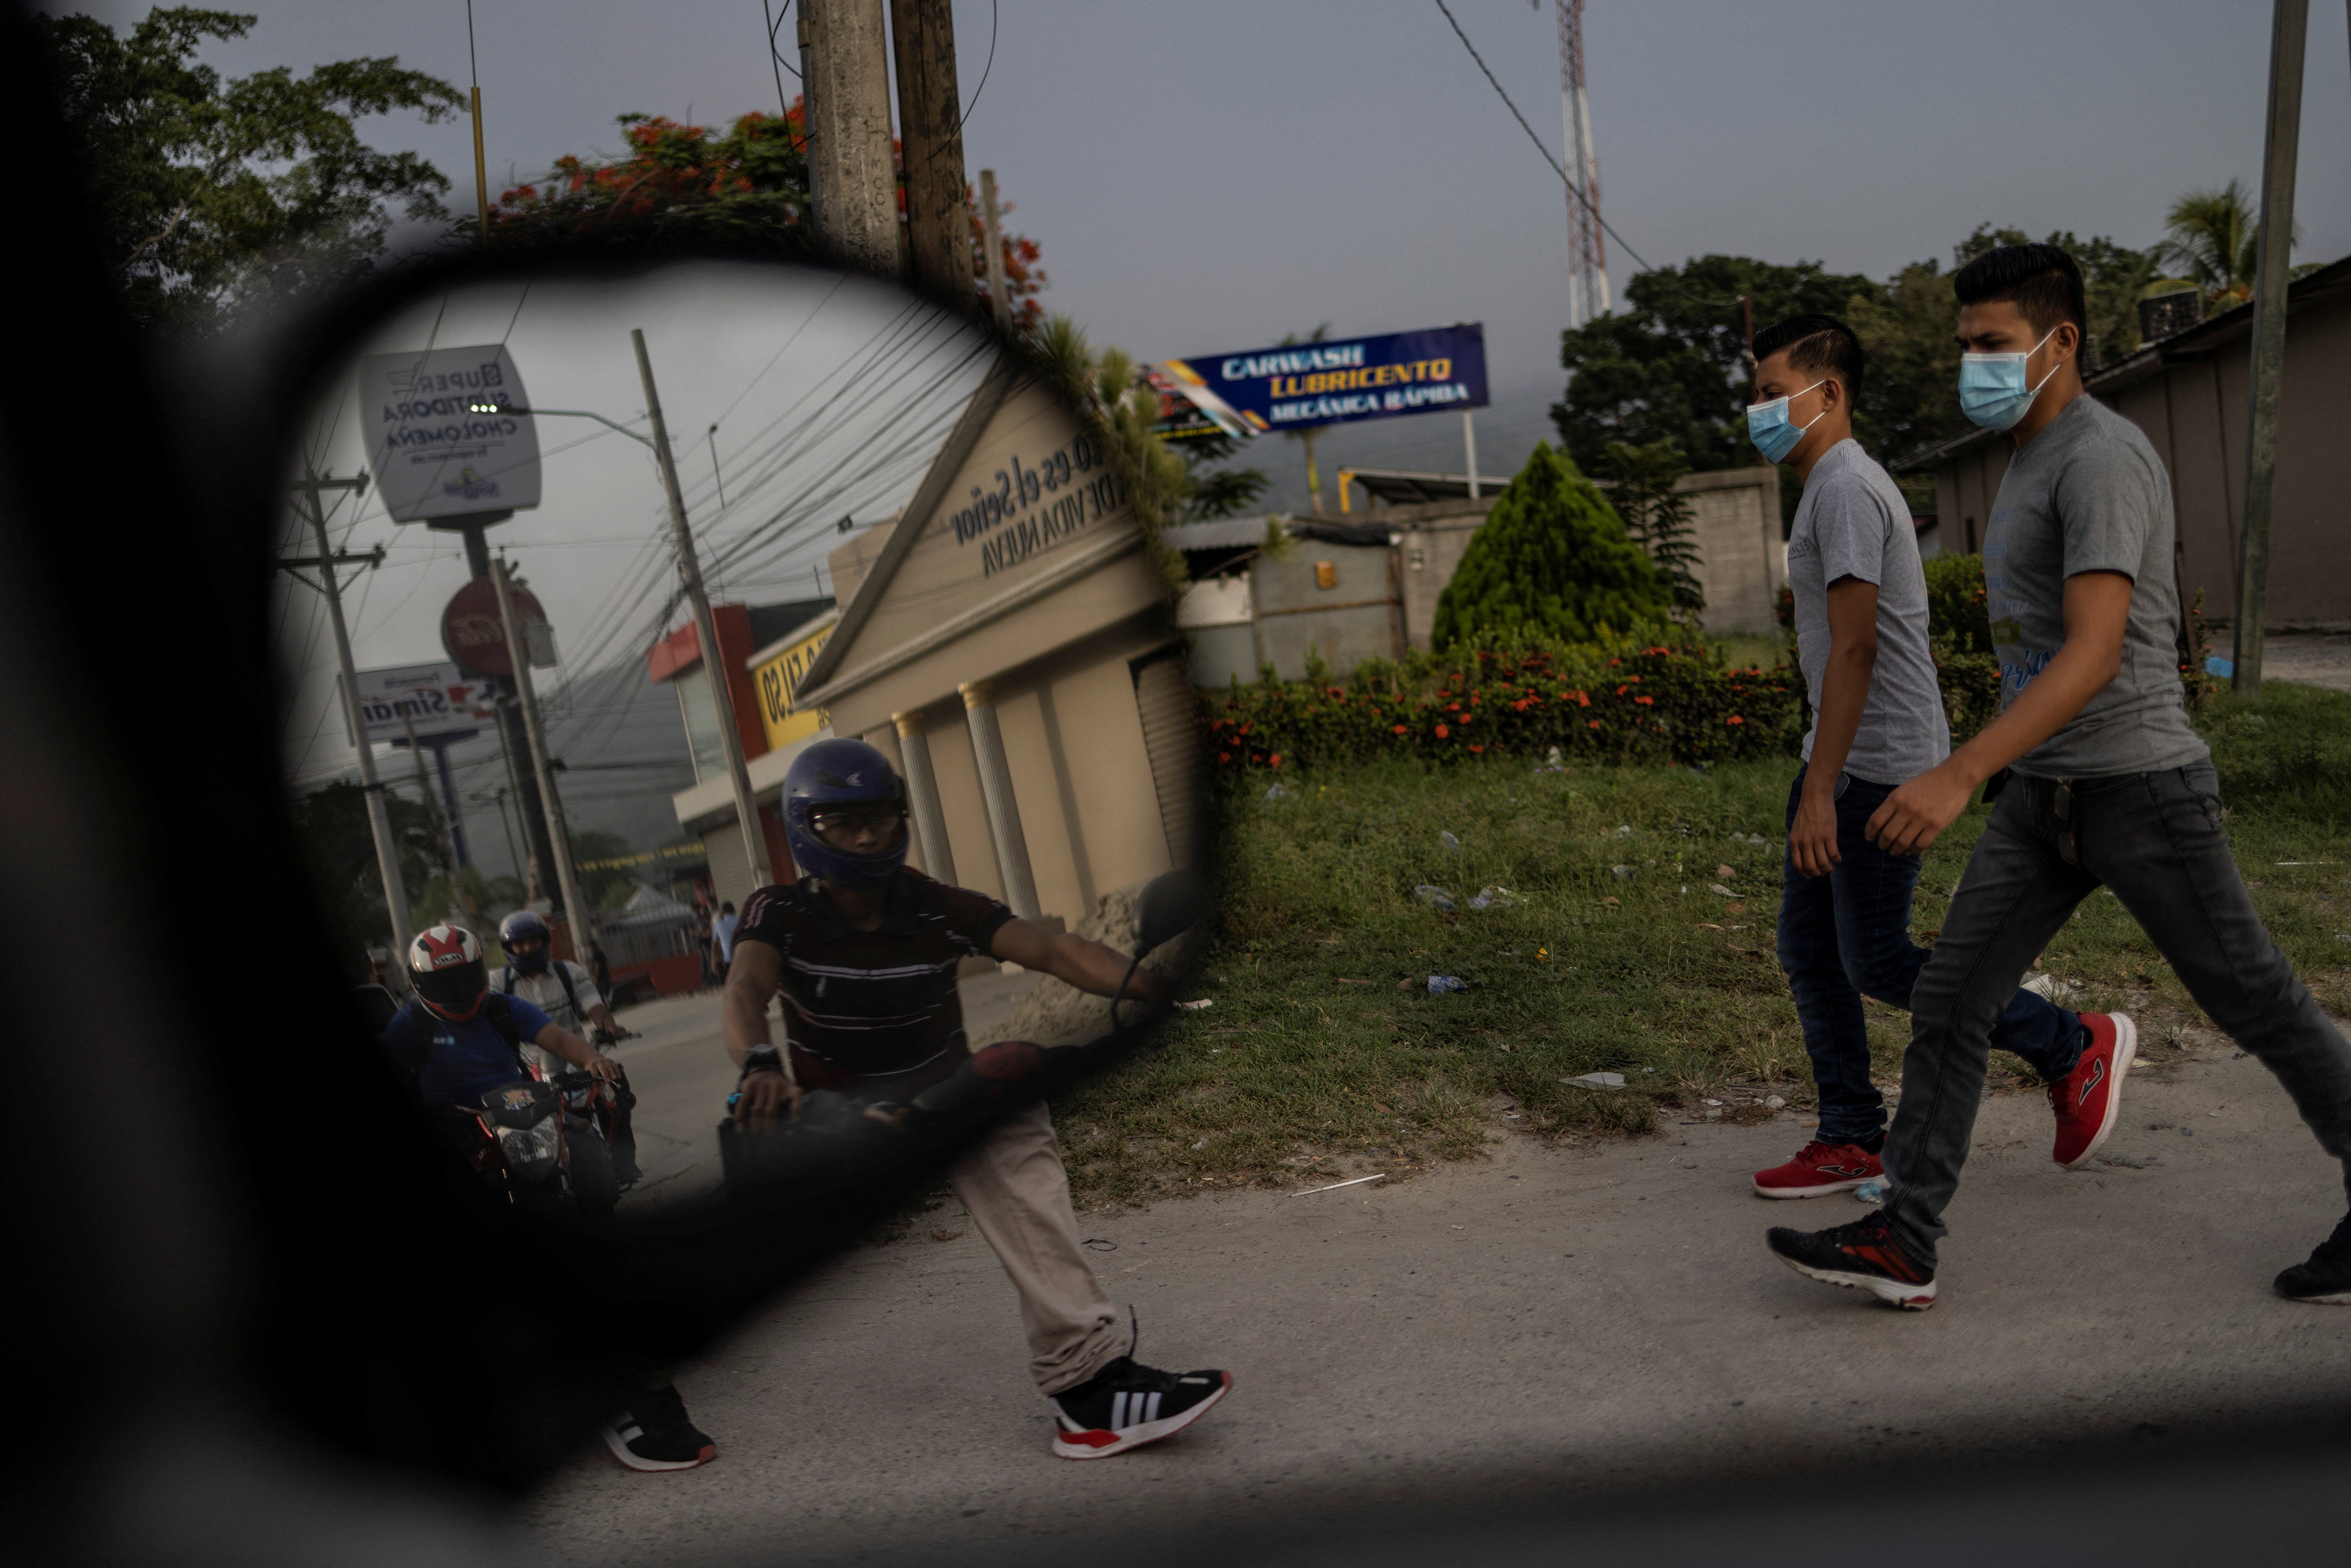 Local residents walk around an industrial area of northwest Honduras